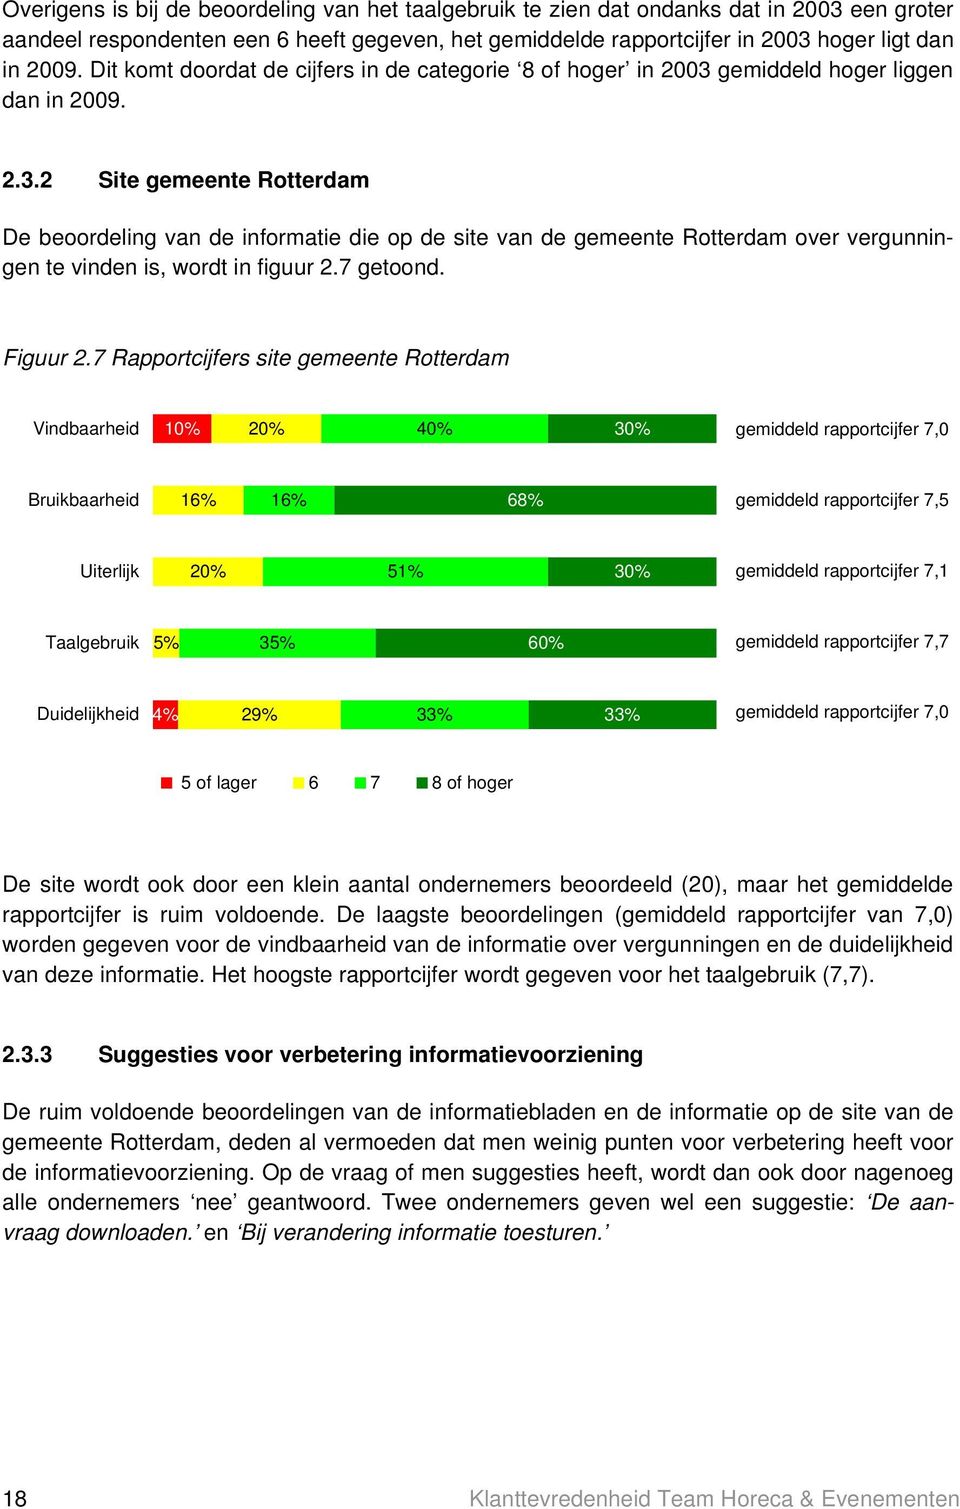 gemiddeld hoger liggen dan in 2009. 2.3.2 Site gemeente Rotterdam De beoordeling van de informatie die op de site van de gemeente Rotterdam over vergunningen te vinden is, wordt in figuur 2.7 getoond.